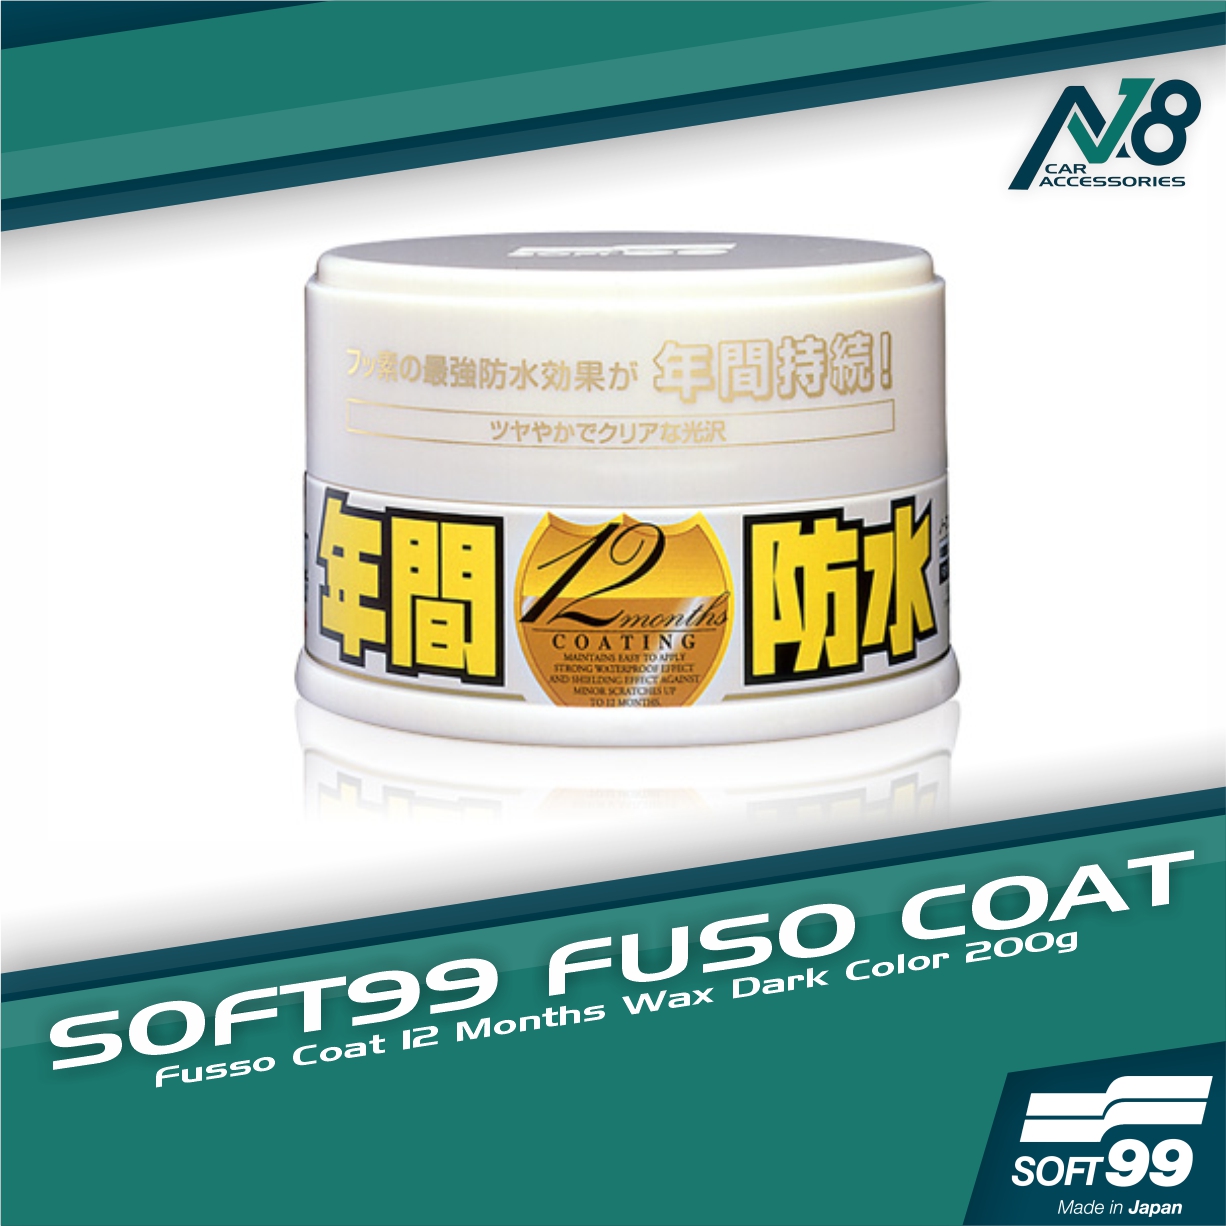 SOFT99 - Fusso Coat 12 Month Wax (Light Colors)